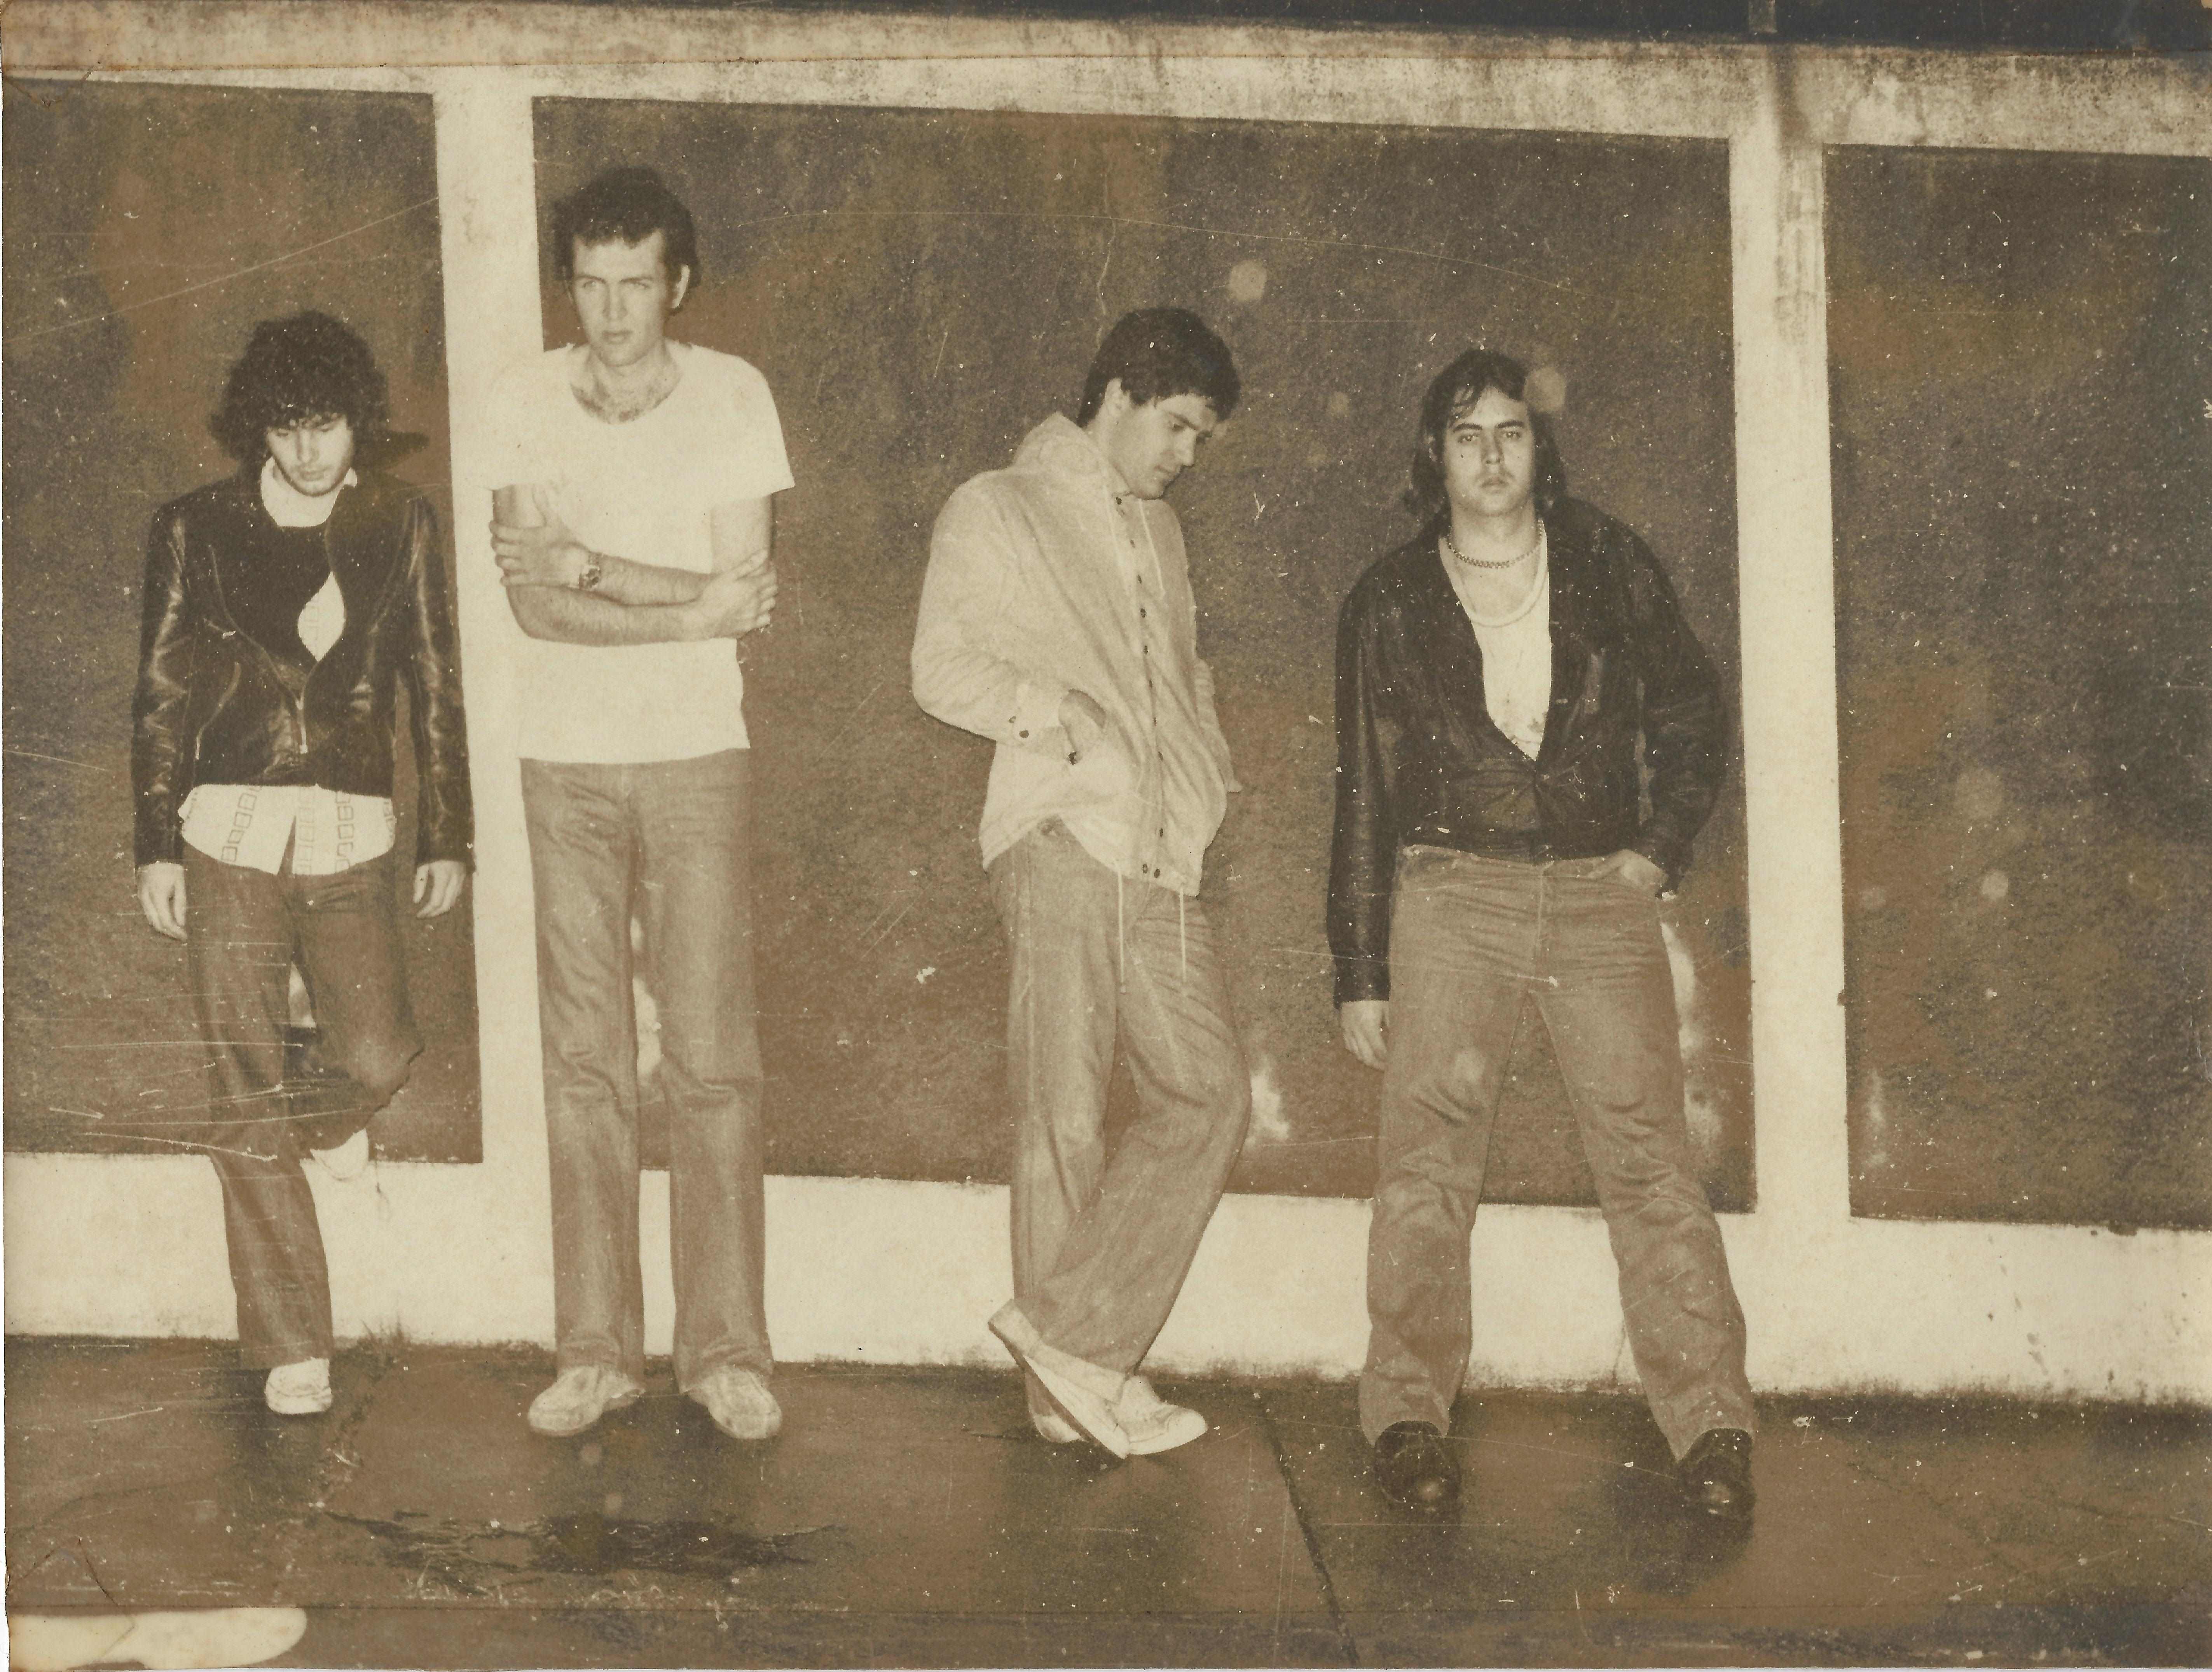 Ratos do Beco, banda pioneira e efêmera do punk paulista, tem ensaio de 1978 eternizado em EP